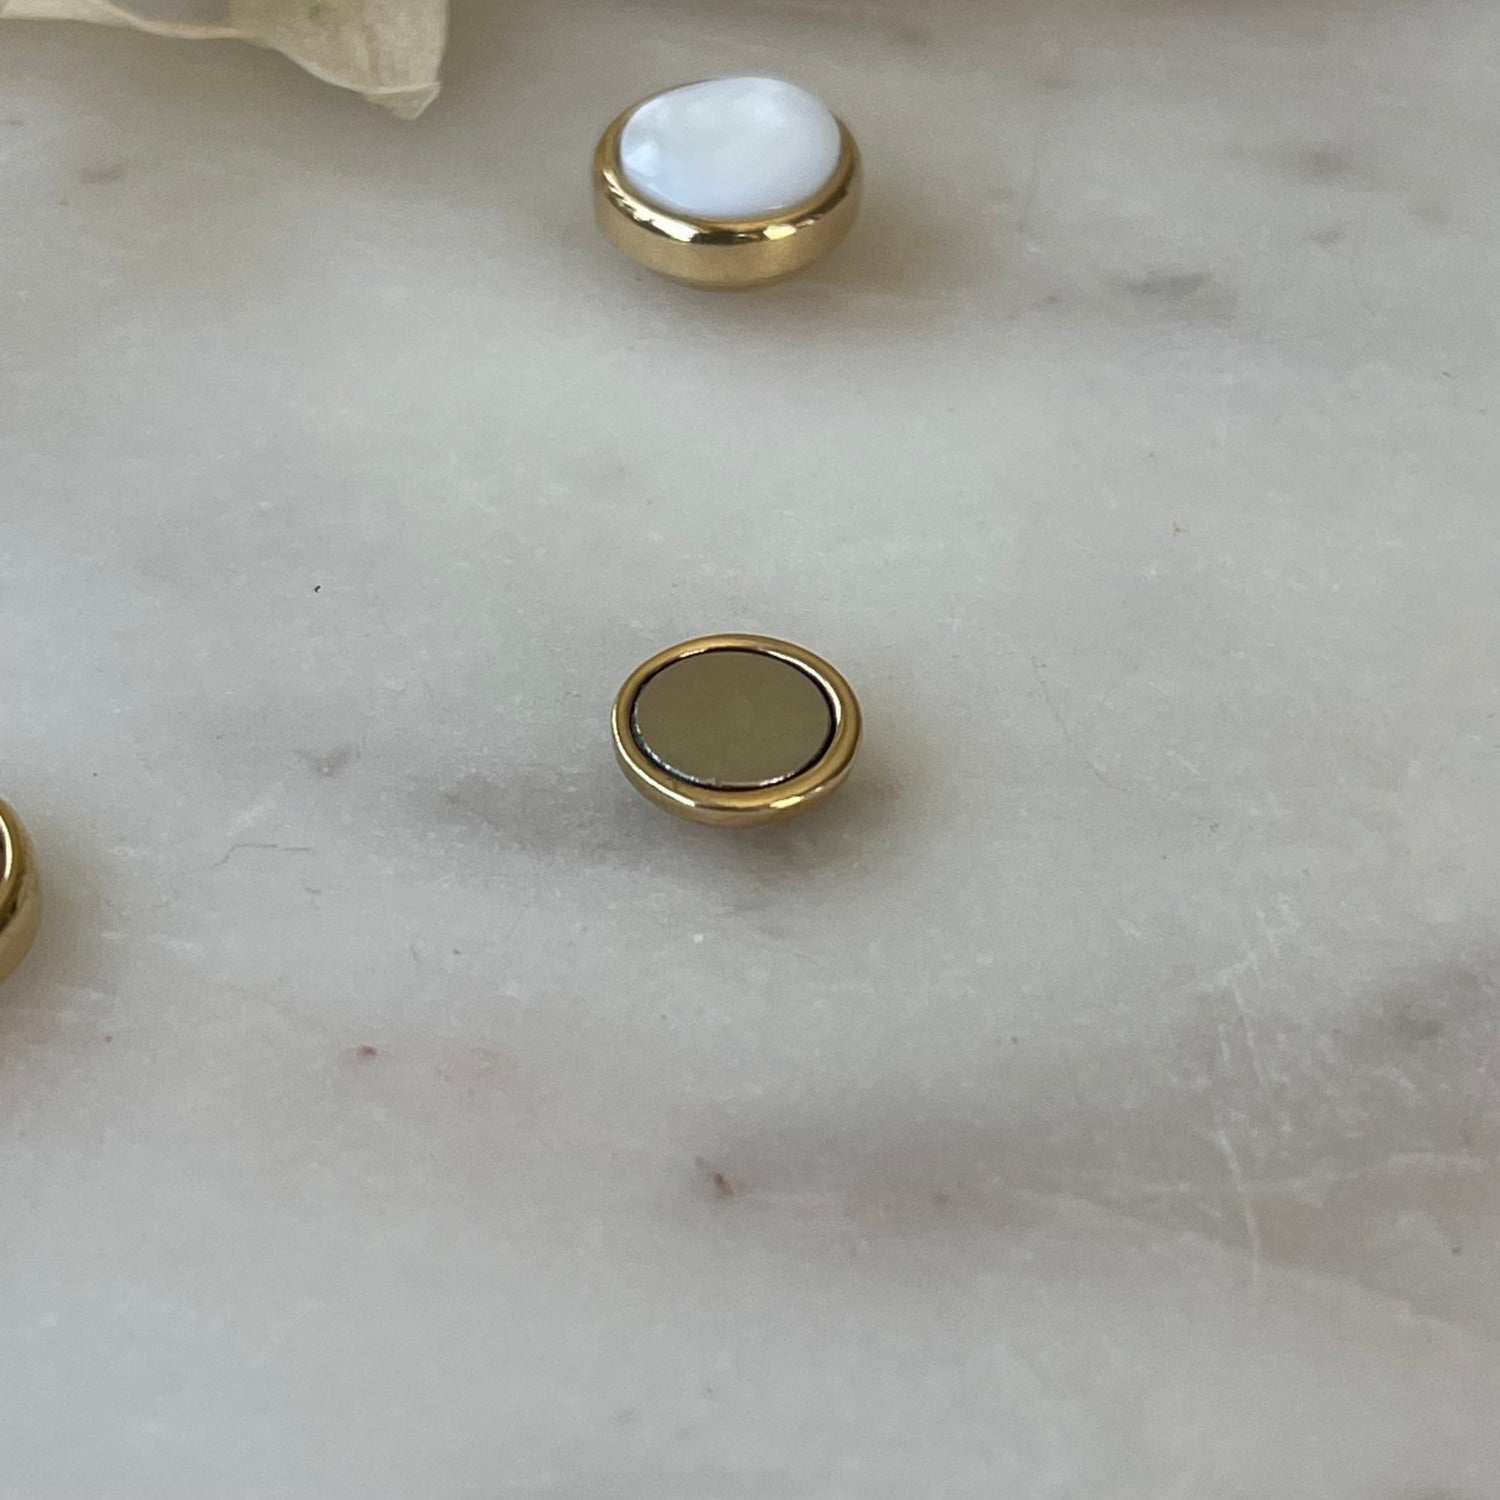 Weiße Ohrringe mit Magnetverschluss aus Perlmutt - Durchmesser: 1,2 cm - Vergoldet - Der Magnetverschluss erleichtert das Anlegen und sorgt dafür, dass der Ohrring fest im Ohr sitzt